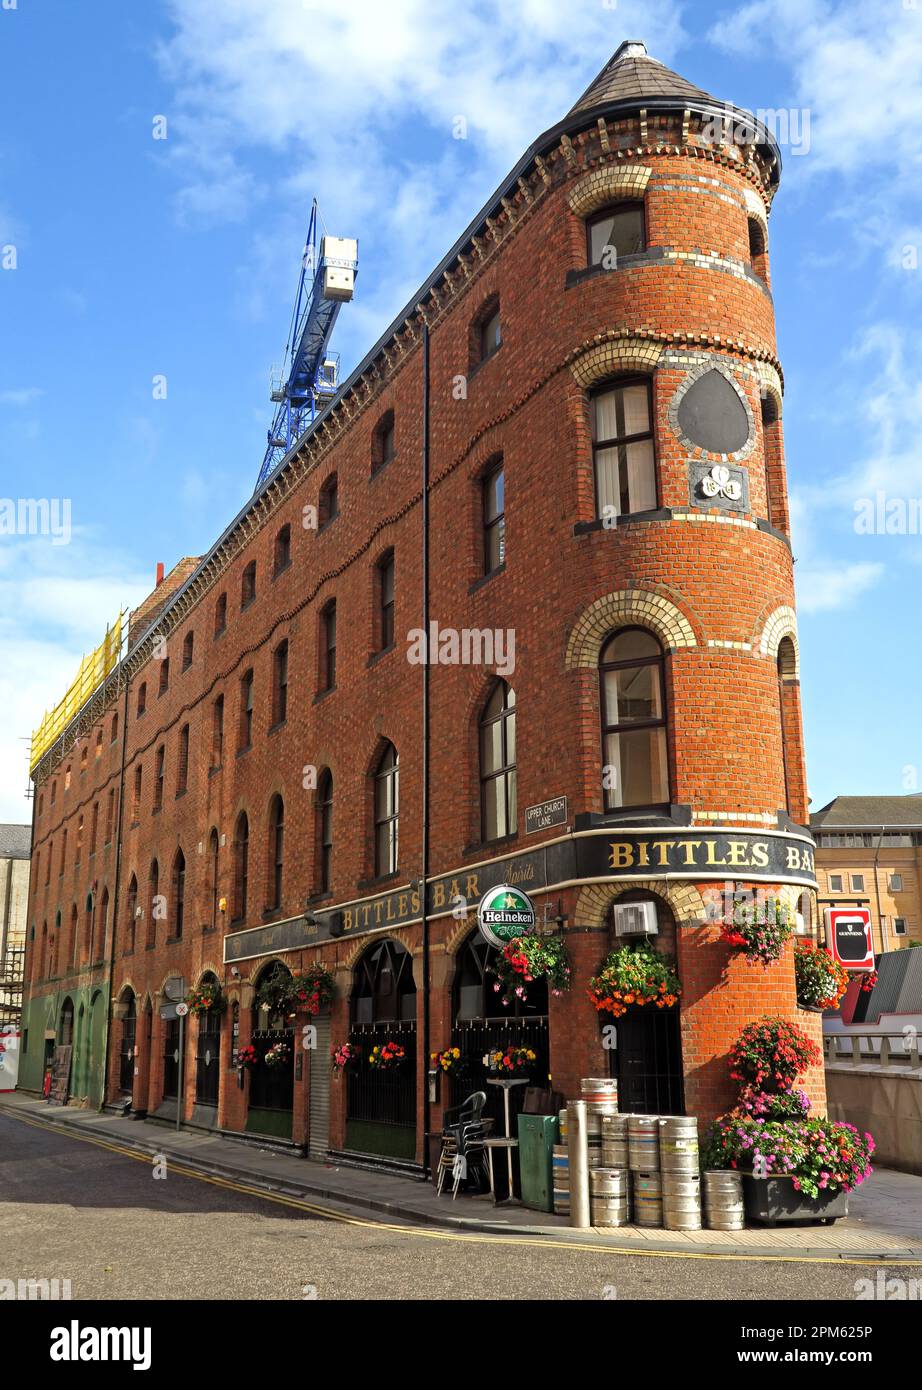 Lo storico Bittles Bar in ferro piatto, 70 Upper Church Lane, Belfast, Irlanda del Nord, Regno Unito, BT1 4QL Foto Stock